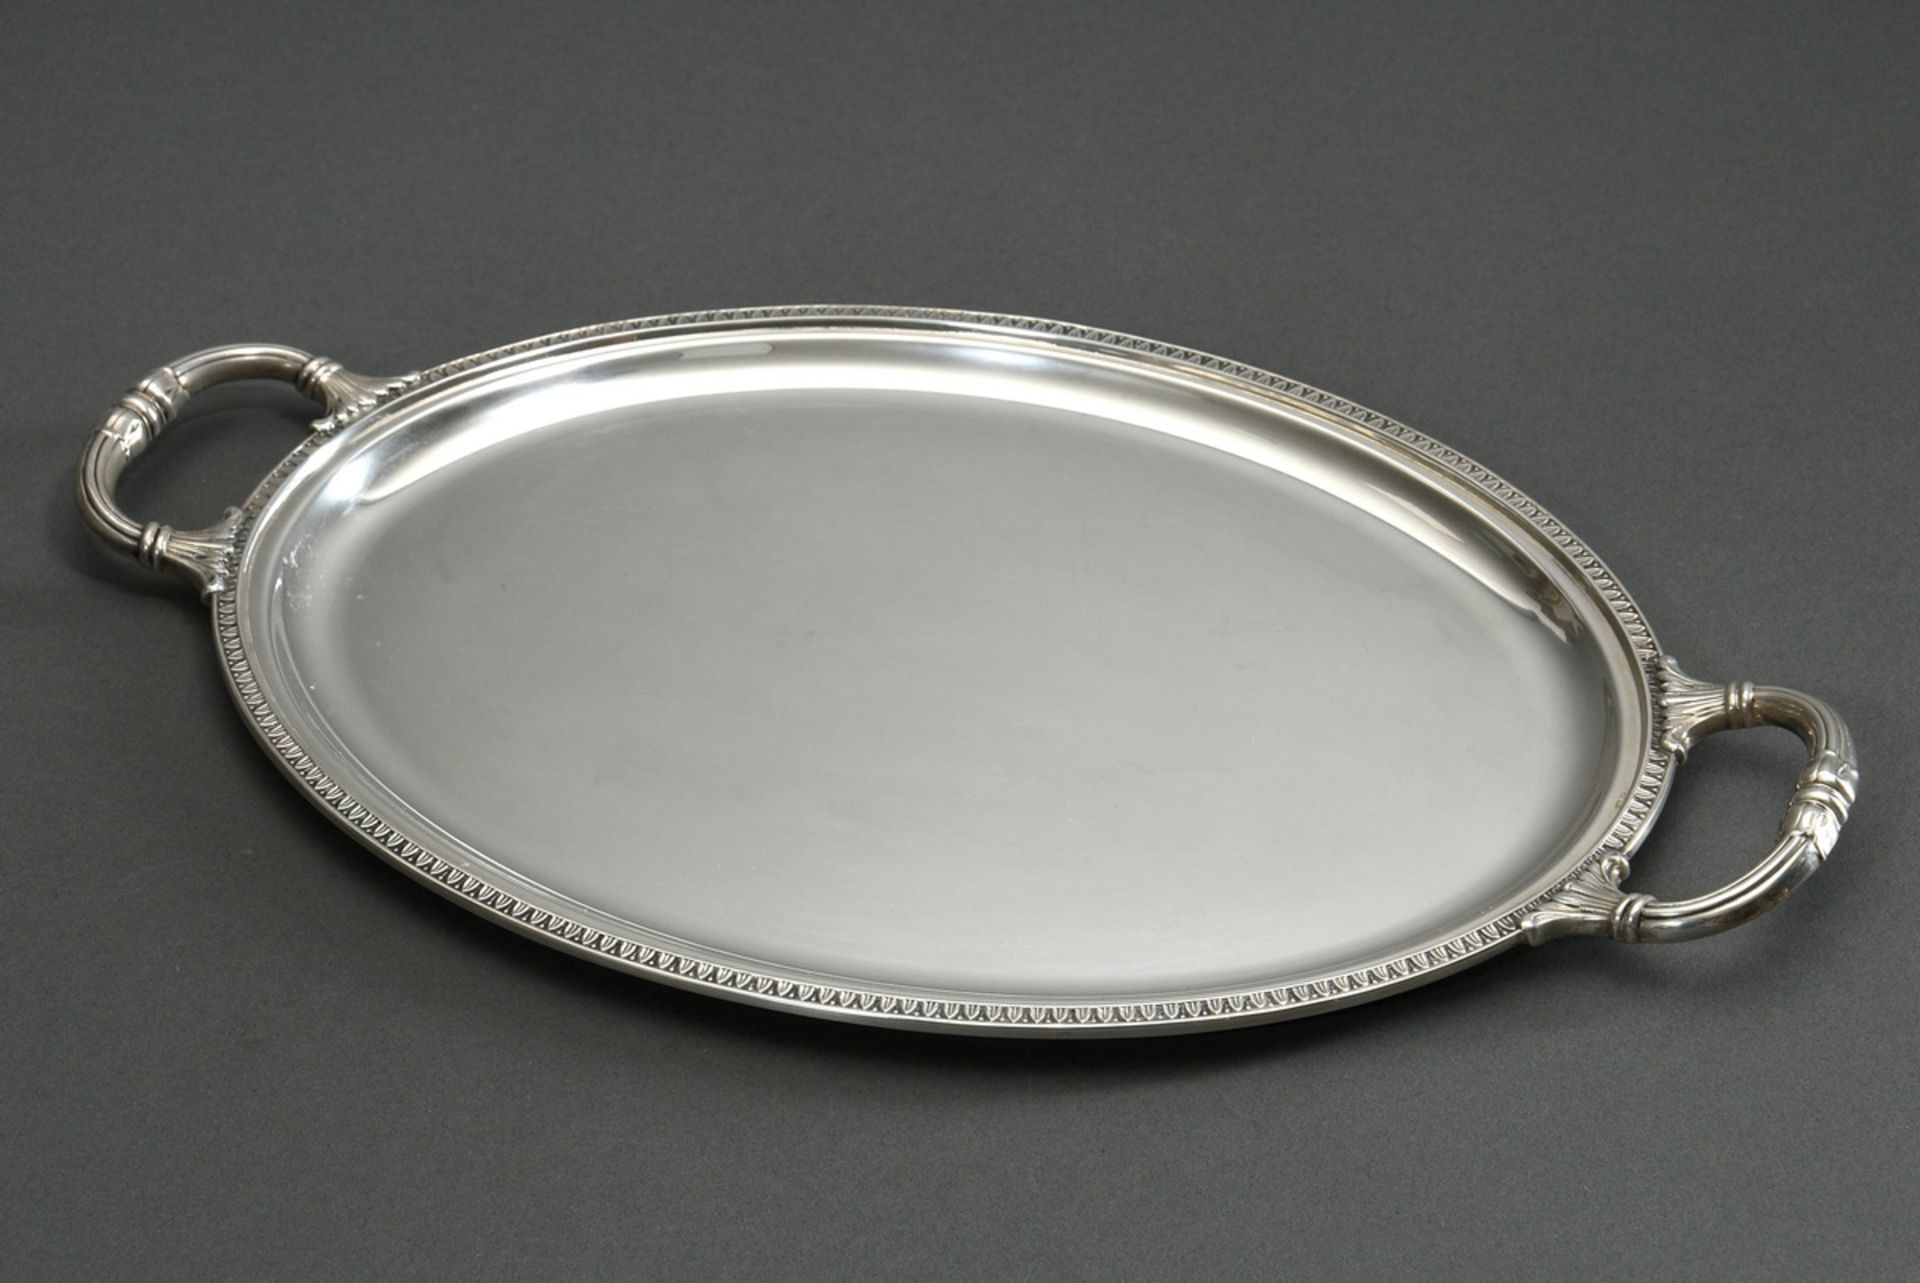 Ovales Tablett in klassischer Façon mit Reliefrand und -griffen, Silber 800, 525g, 41,6x24,6cm, lei